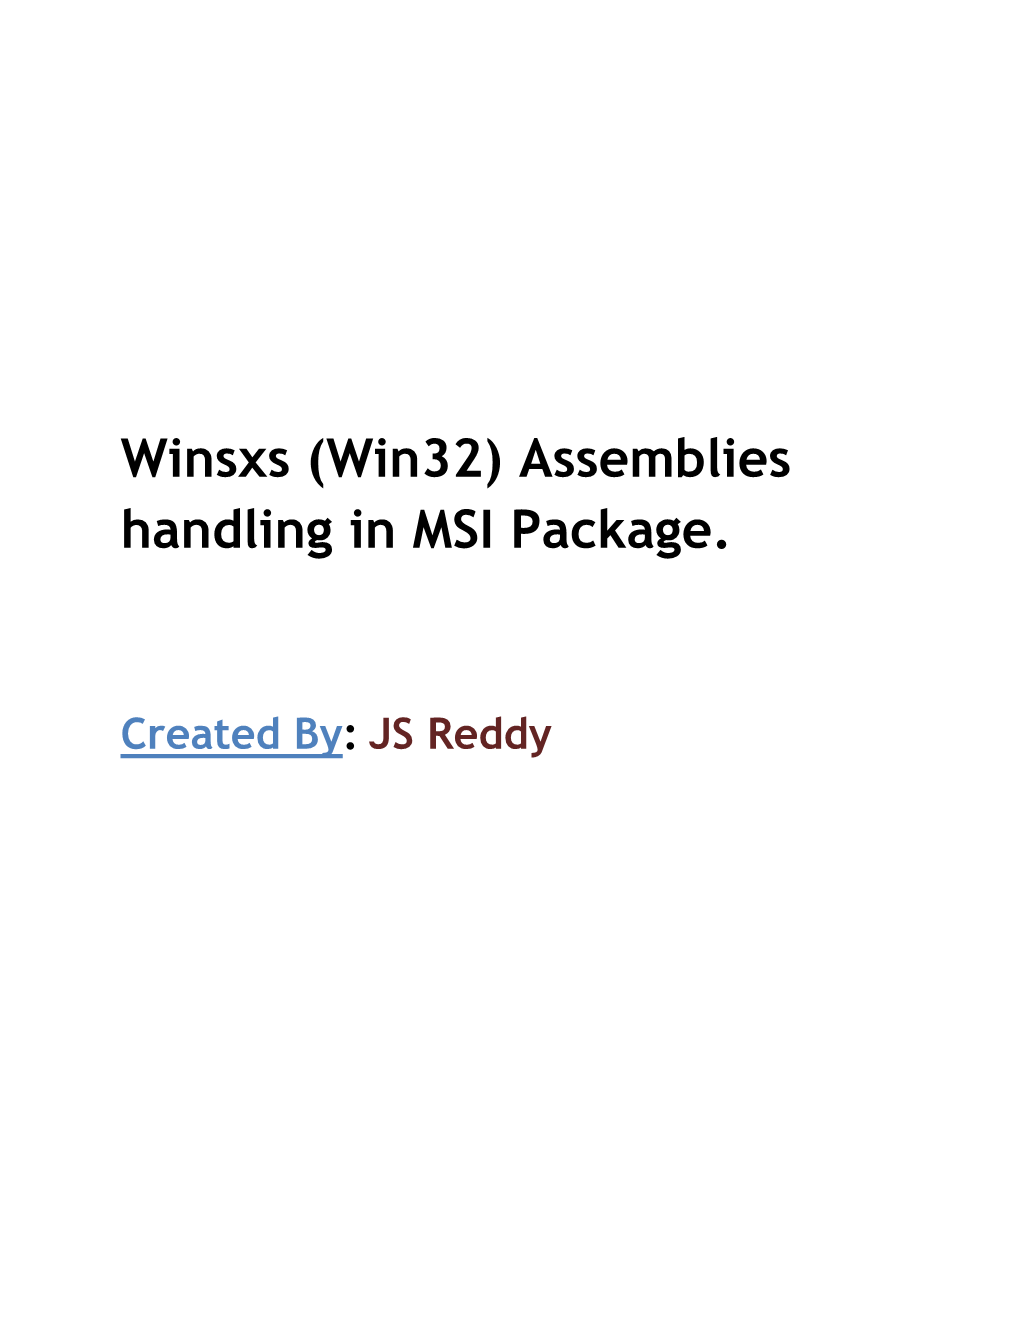 Winsxs (Win32) Assemblies Handling in MSI Package